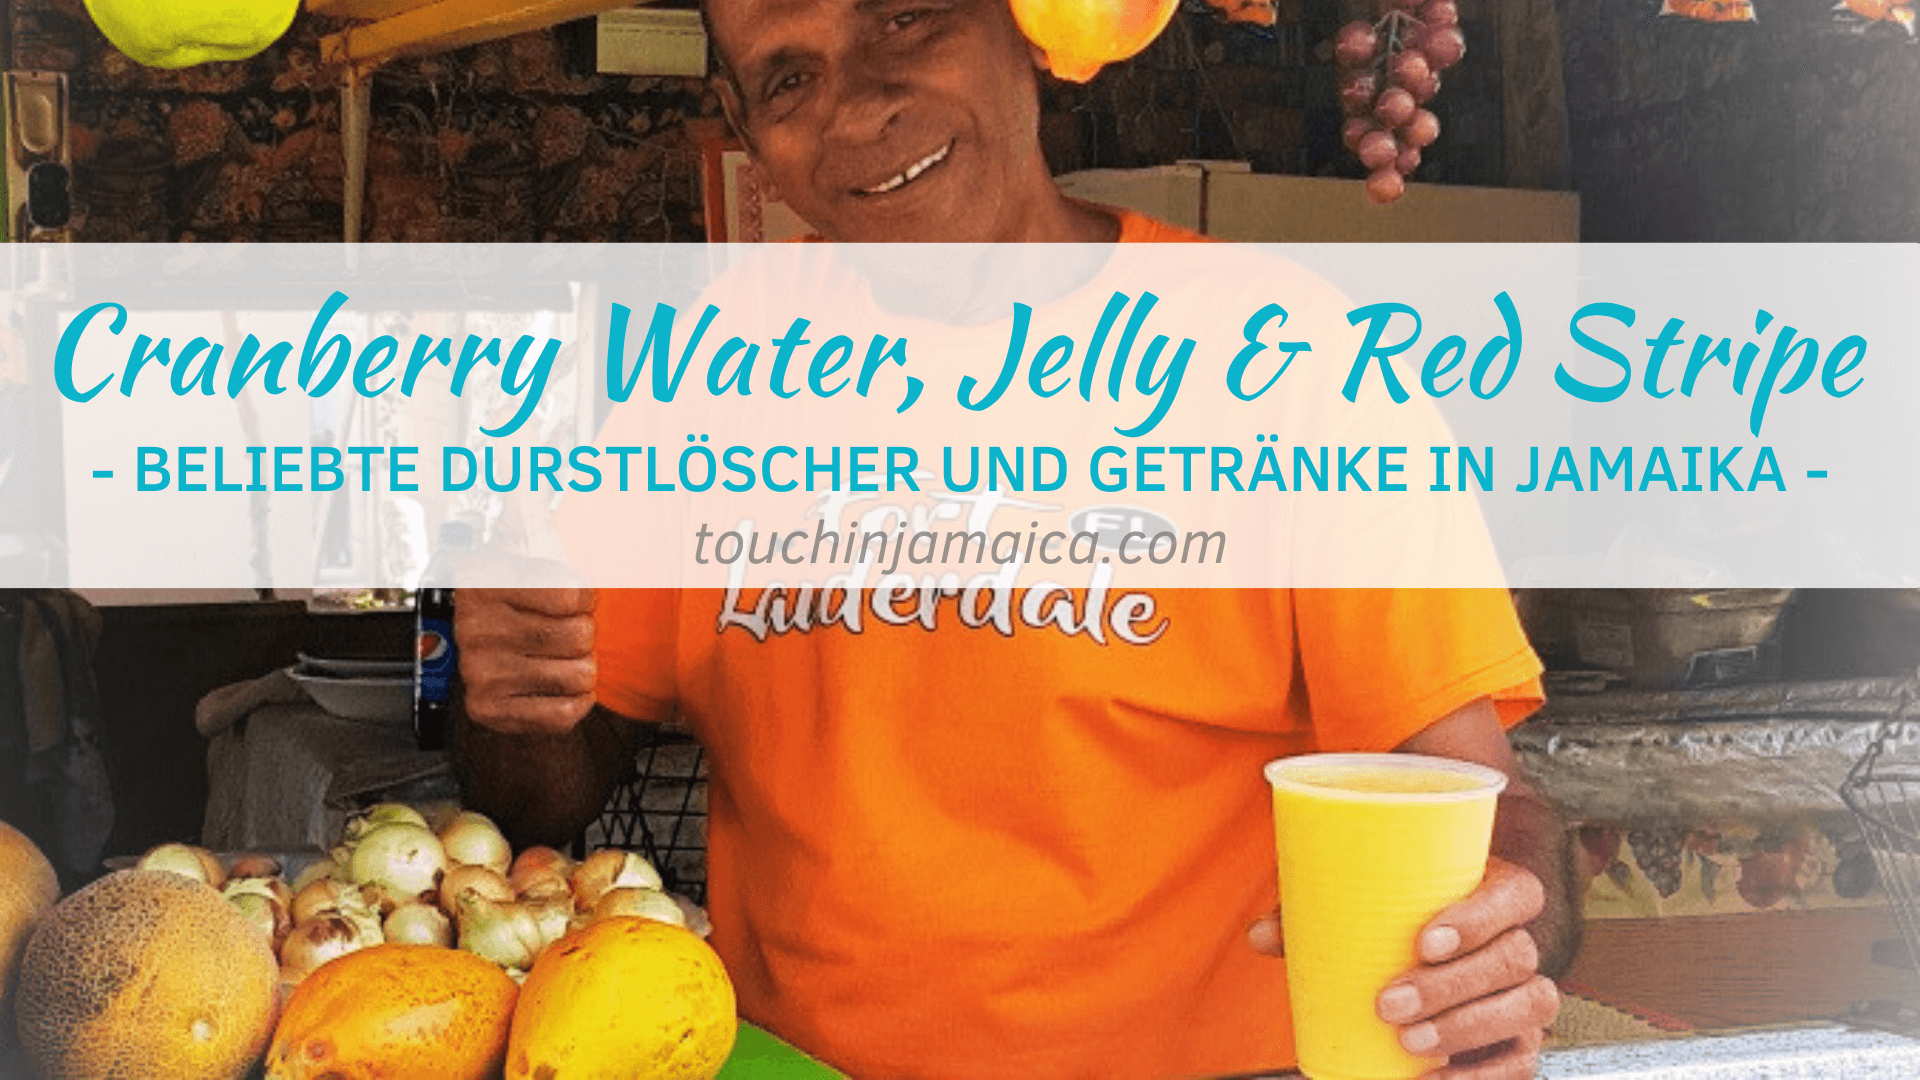 Cranberry Water, Jelly & Red Stripe – Beliebte Durstlöscher und Getränke in Jamaika